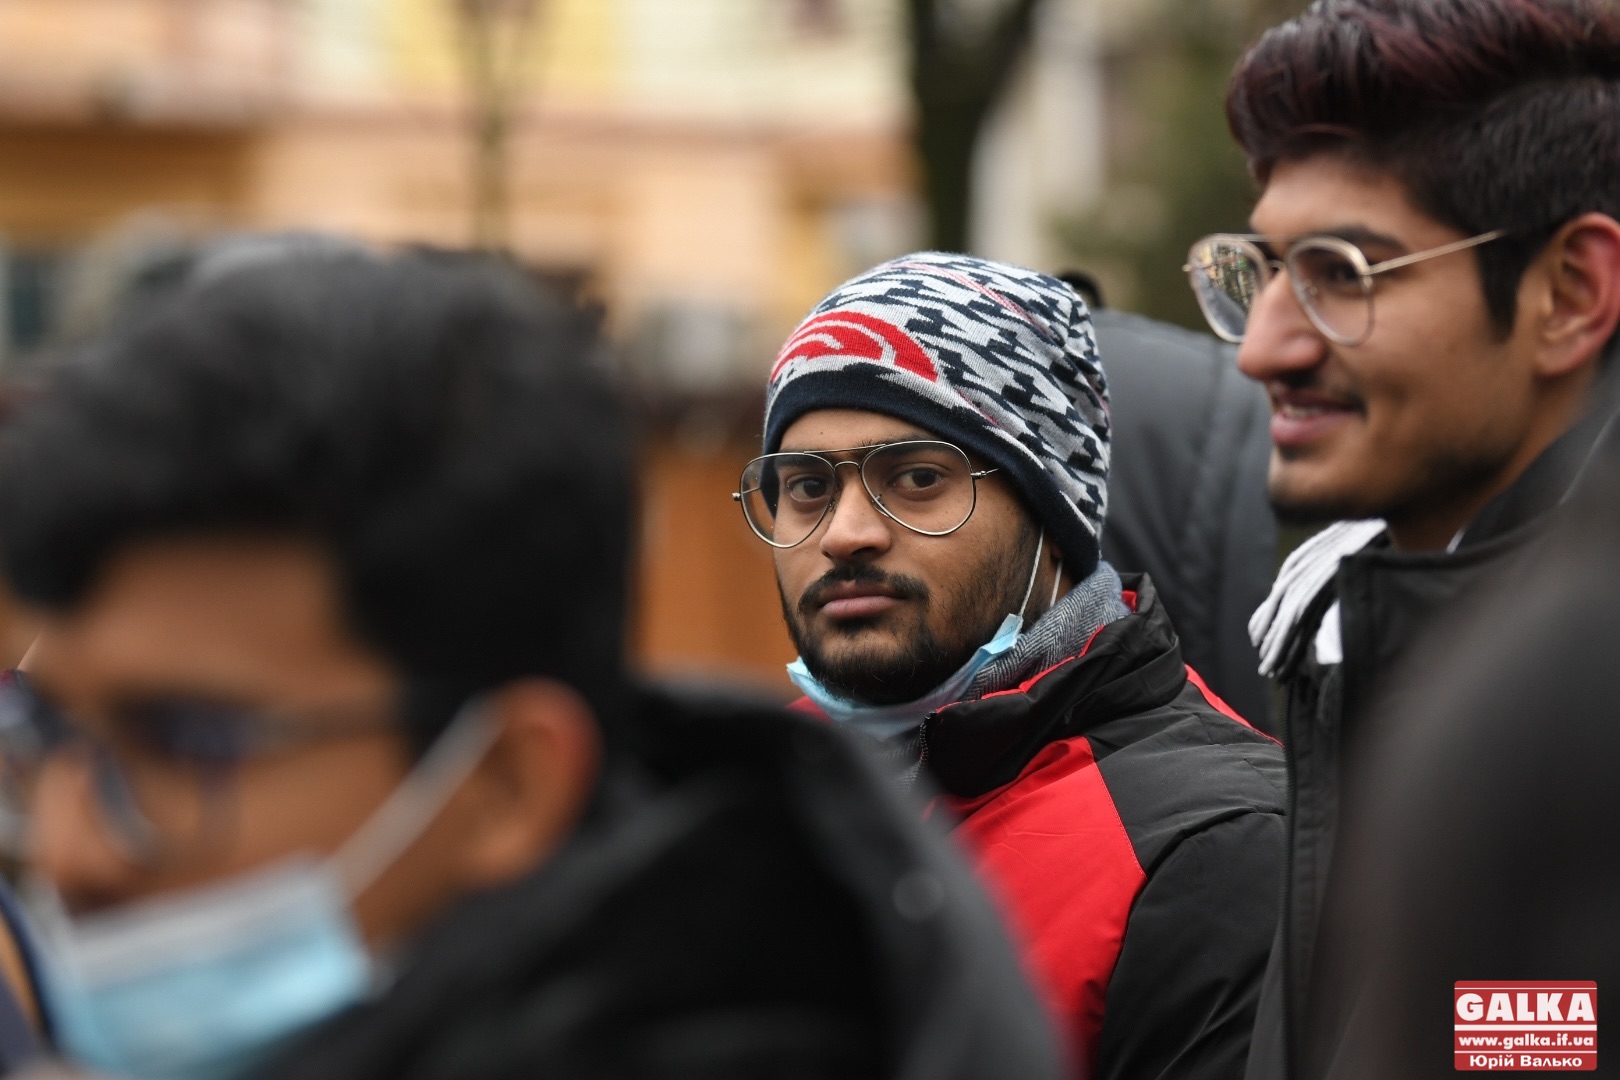 У Франківську студенти-іноземці скаржаться на пакистанців, які нападають та б'ють їхніх земляків ФОТО